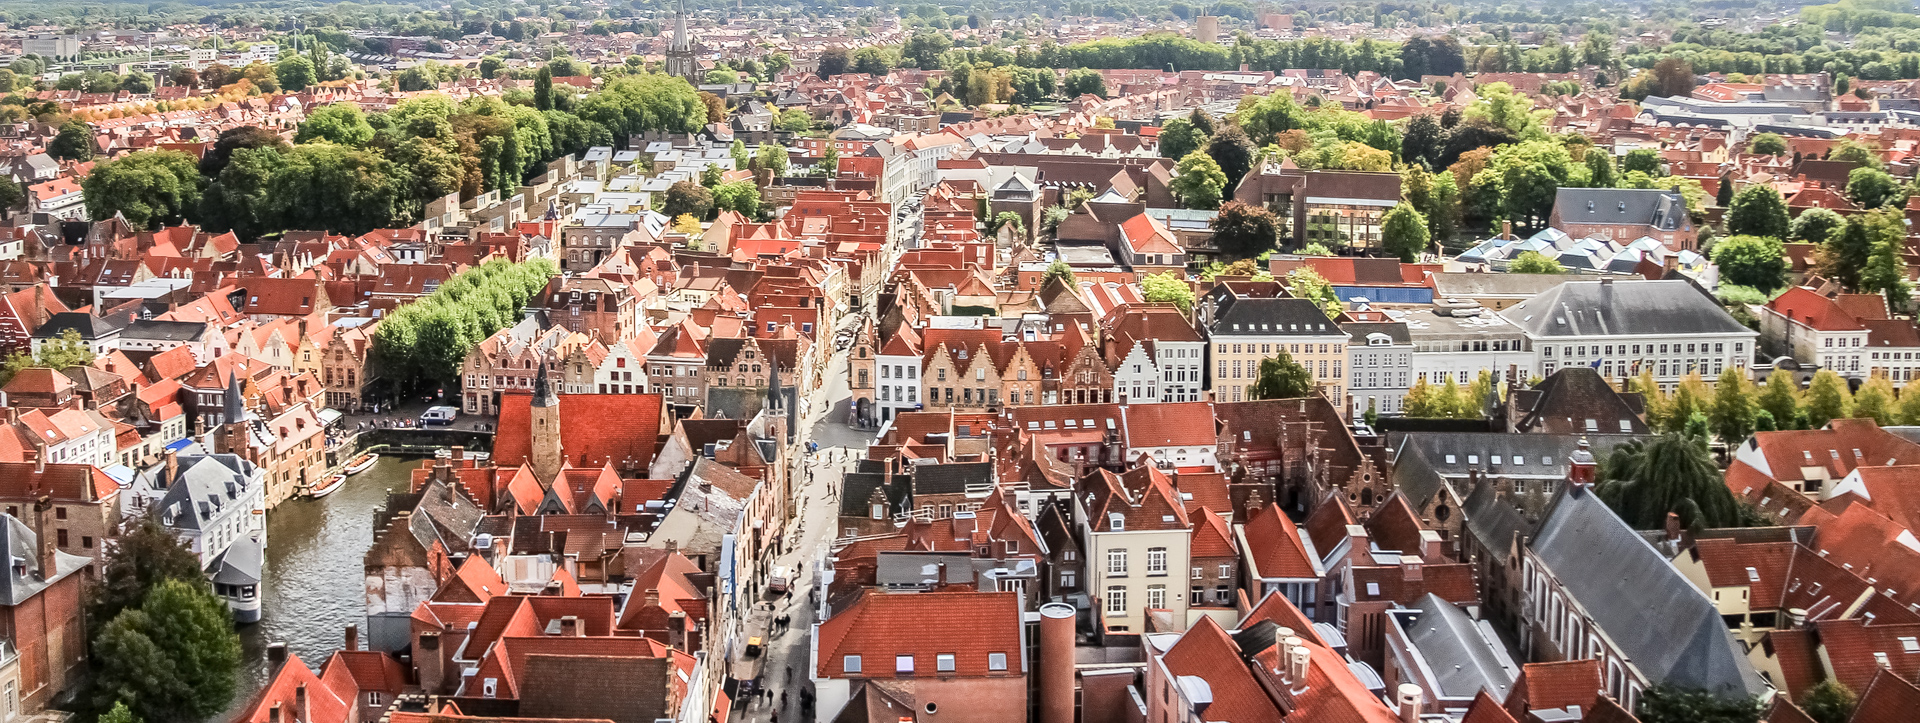 Brugges panorama